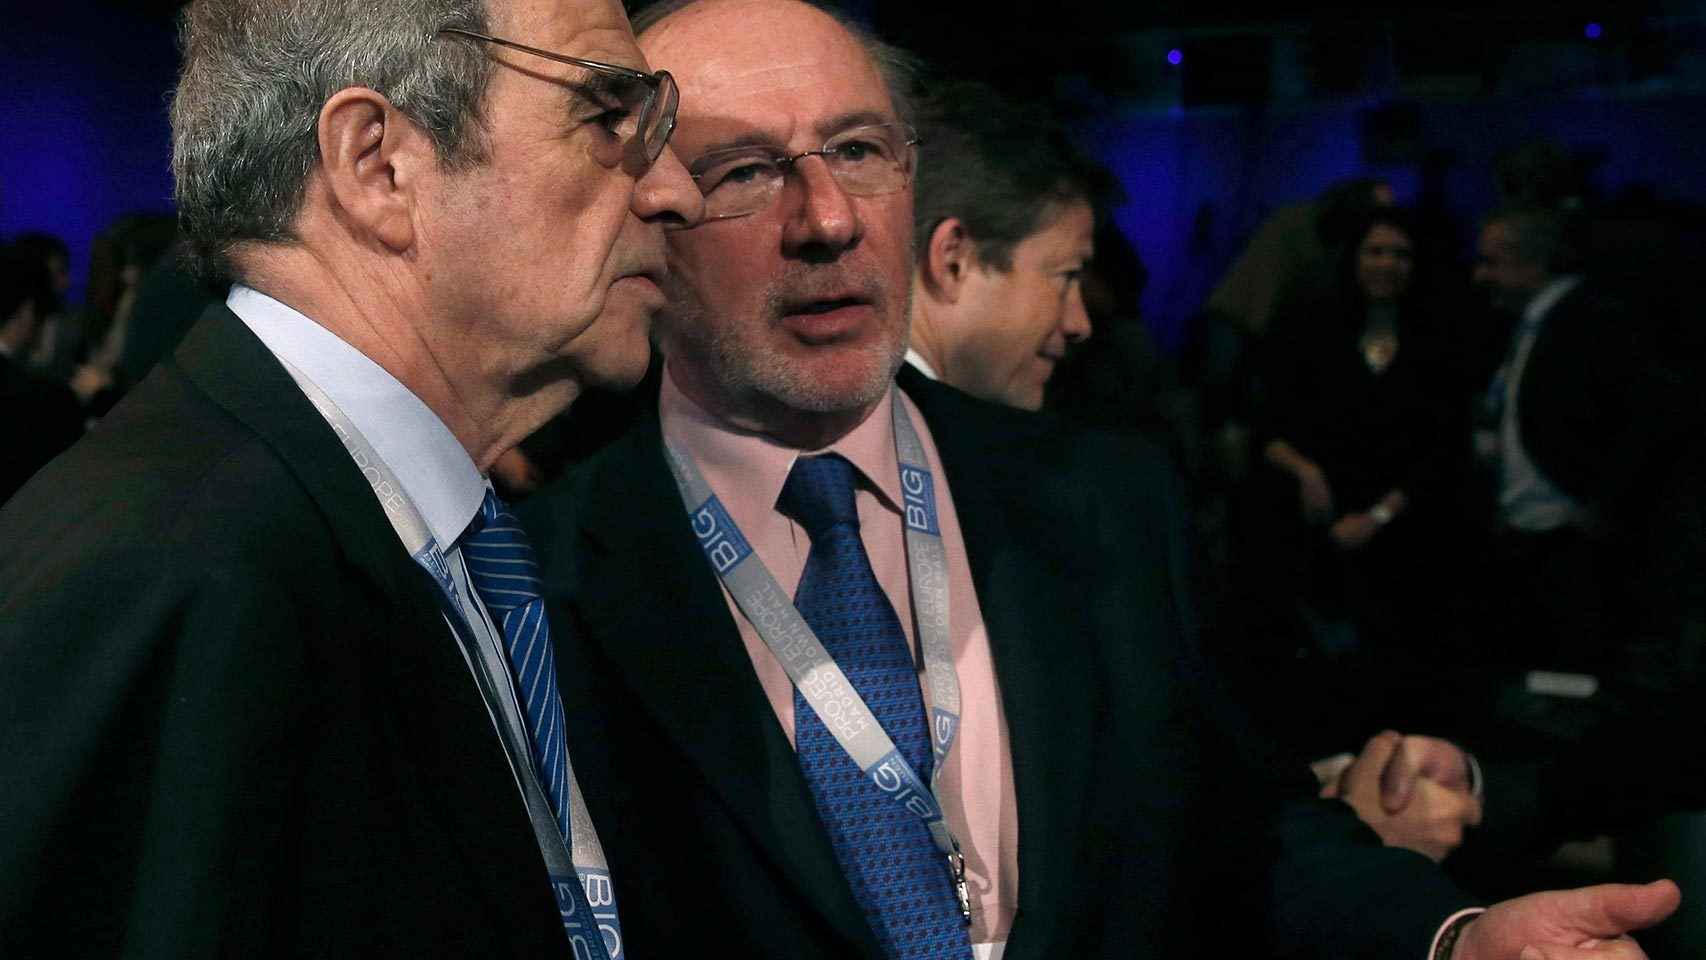 Alierta y Rato conversan durante una conferencia sobre Europa en febrero de 2014.